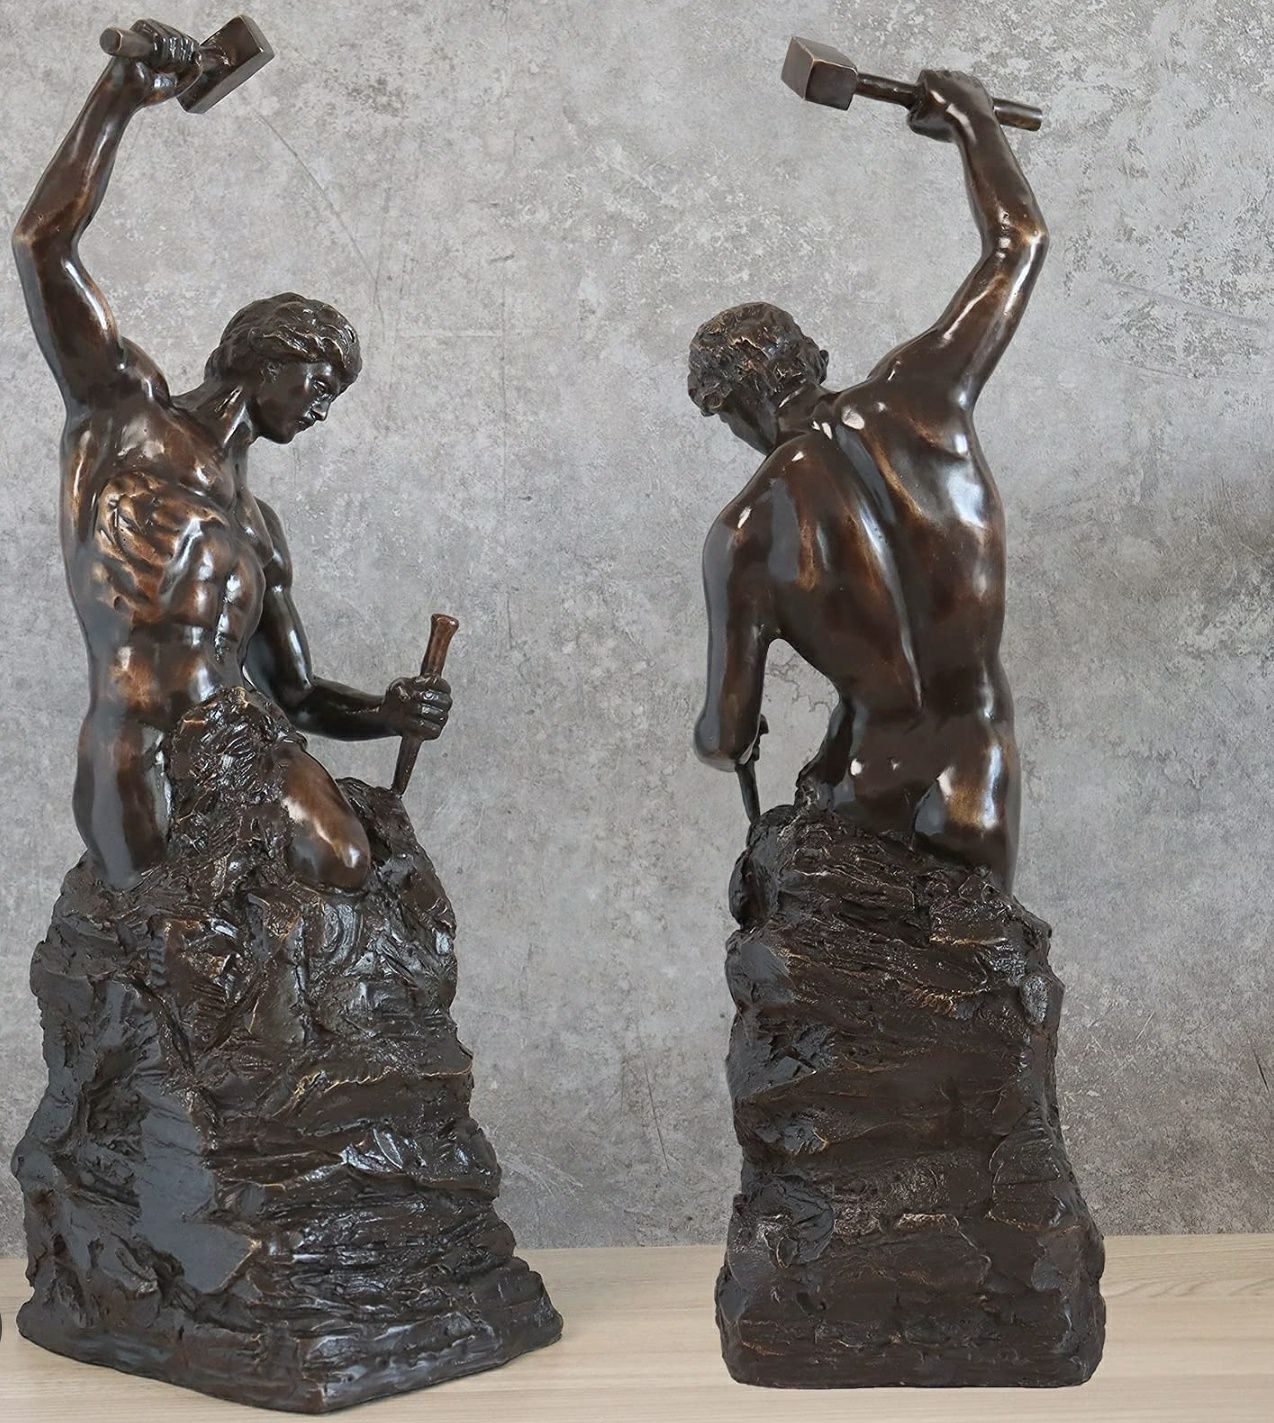 Estátua em Bronze "Self Made Man"